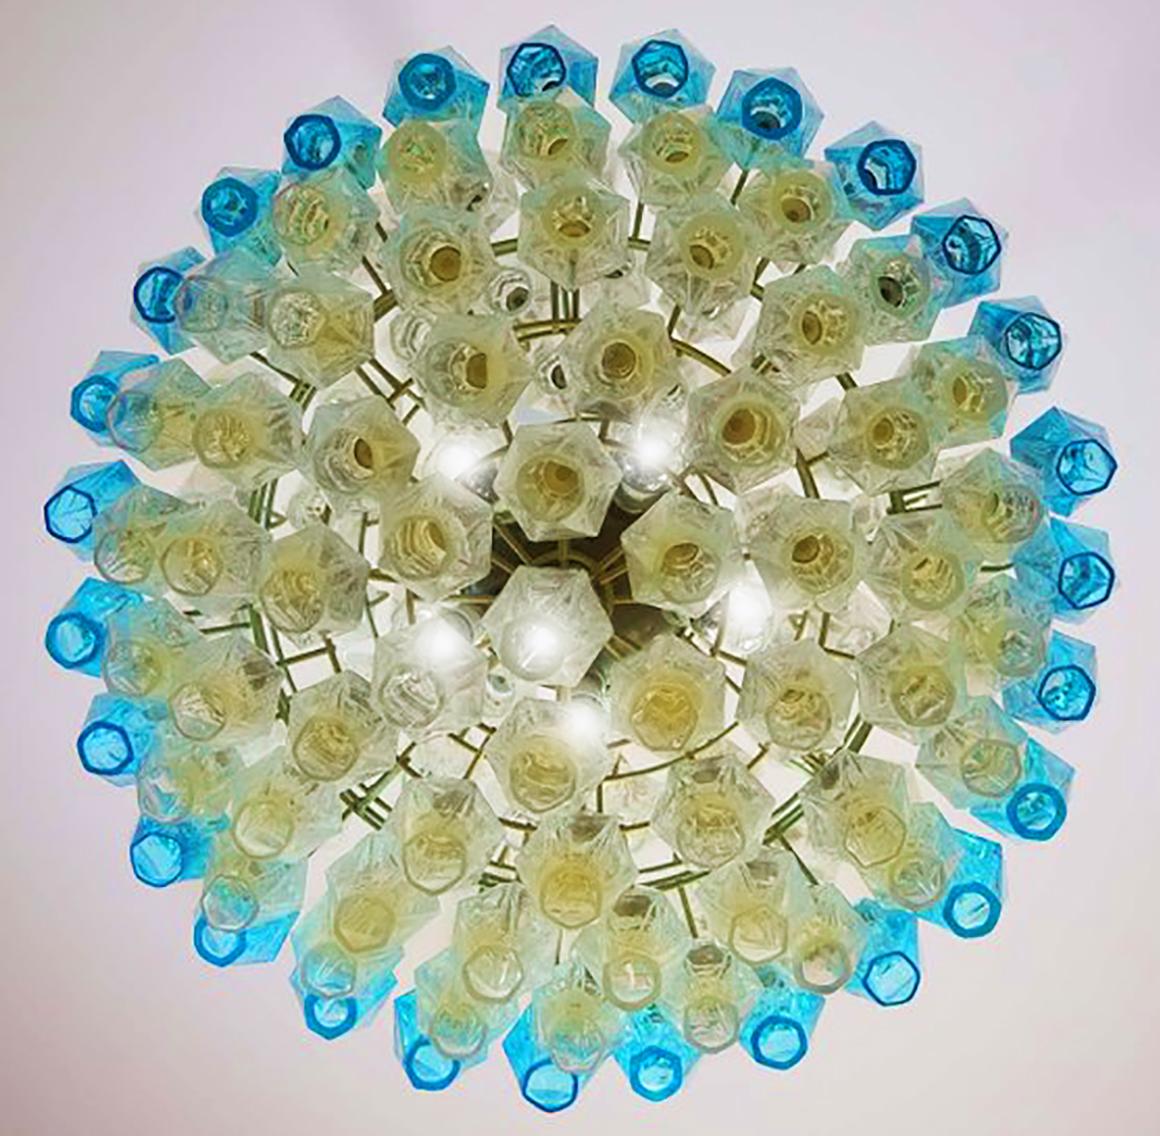 Elegant Italian pendant light made from 140 transparent Murano glasses 